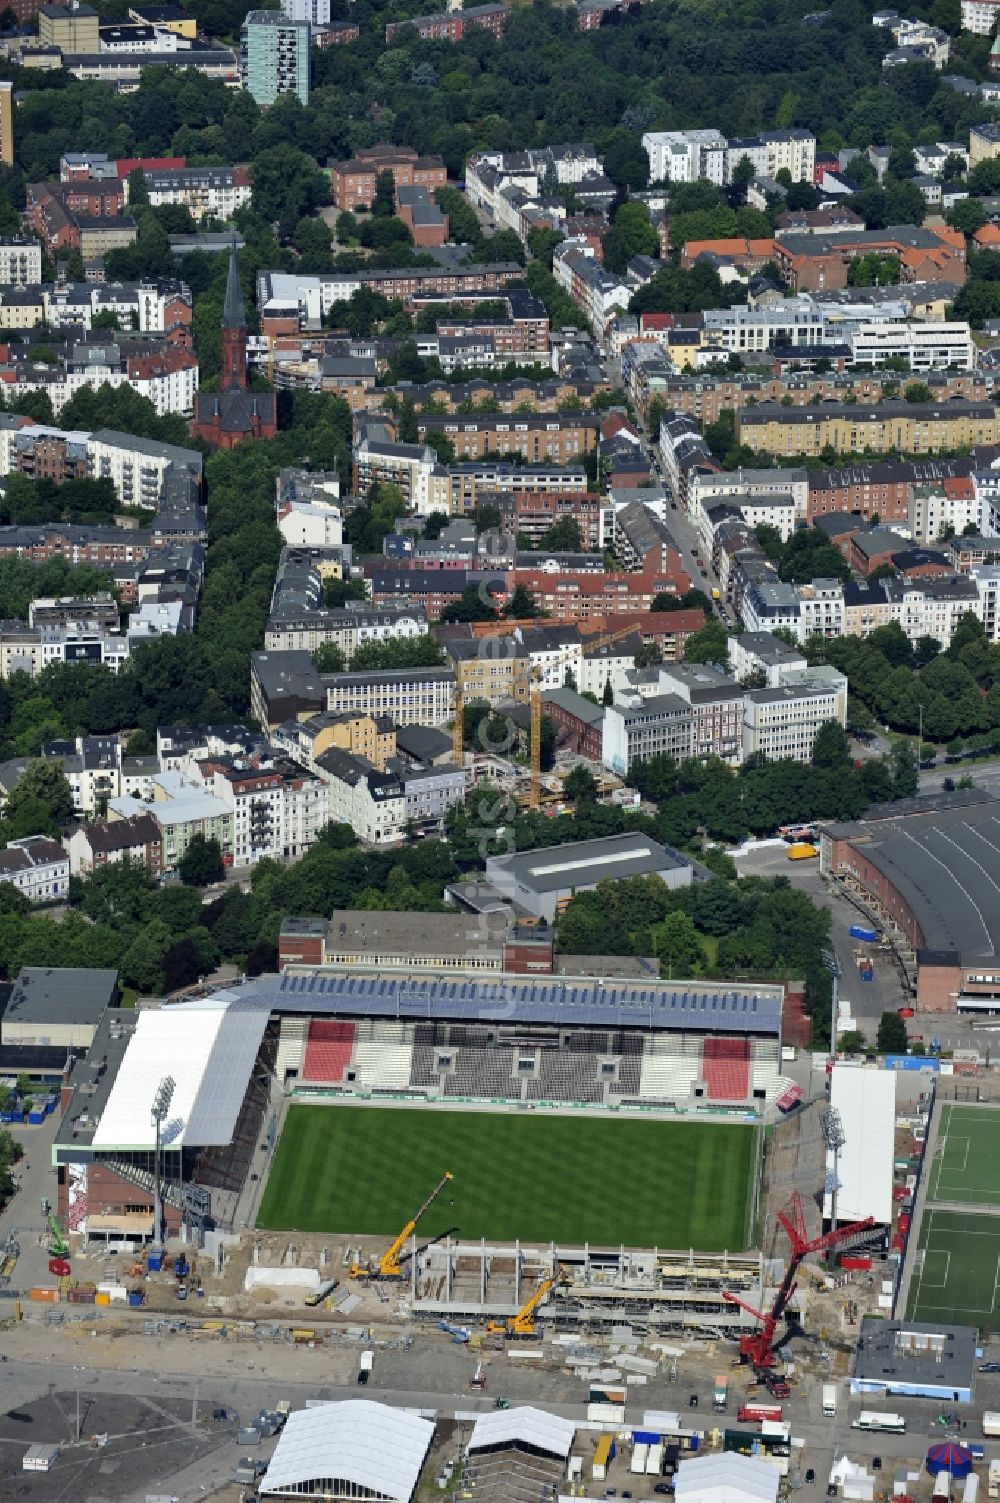 Luftbild Hamburg - Umbau und Erweiterungs- Baustelle am Millerntor-Stadion / St. Pauli Stadion in Hamburg